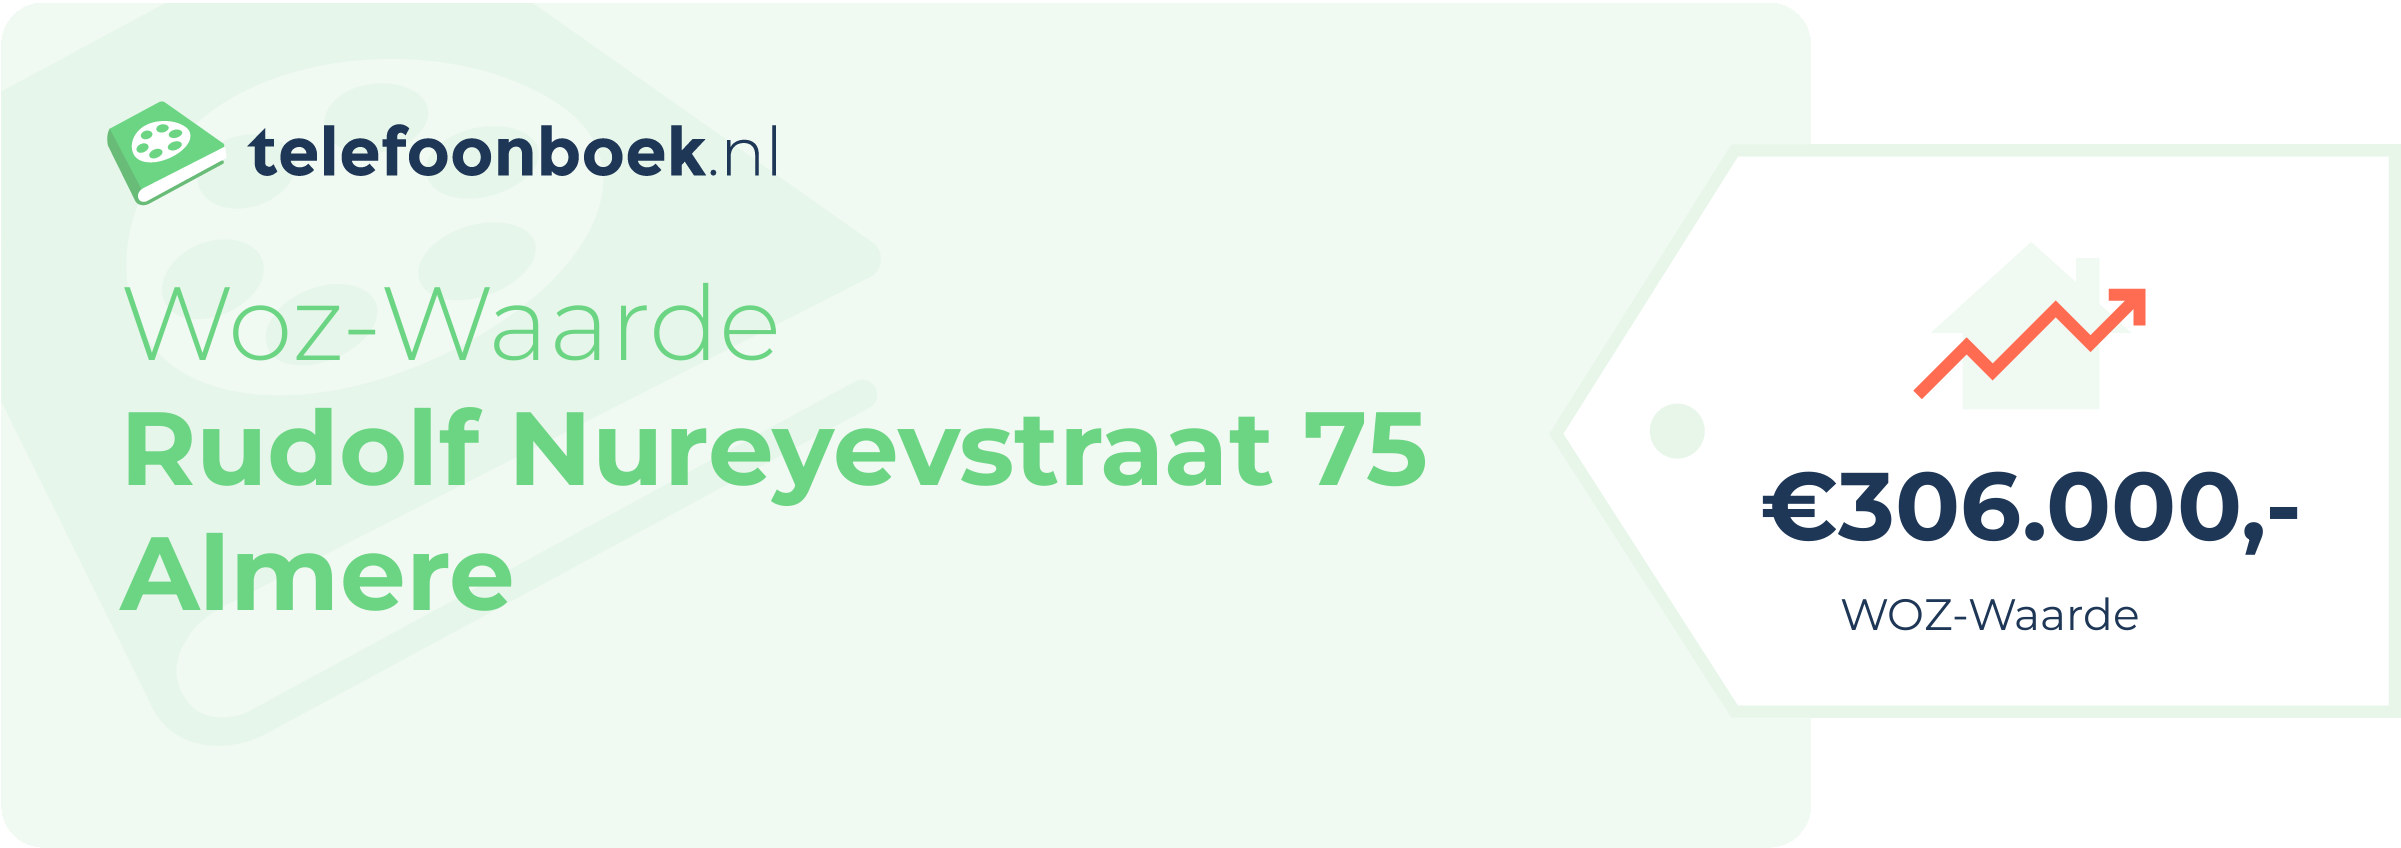 WOZ-waarde Rudolf Nureyevstraat 75 Almere